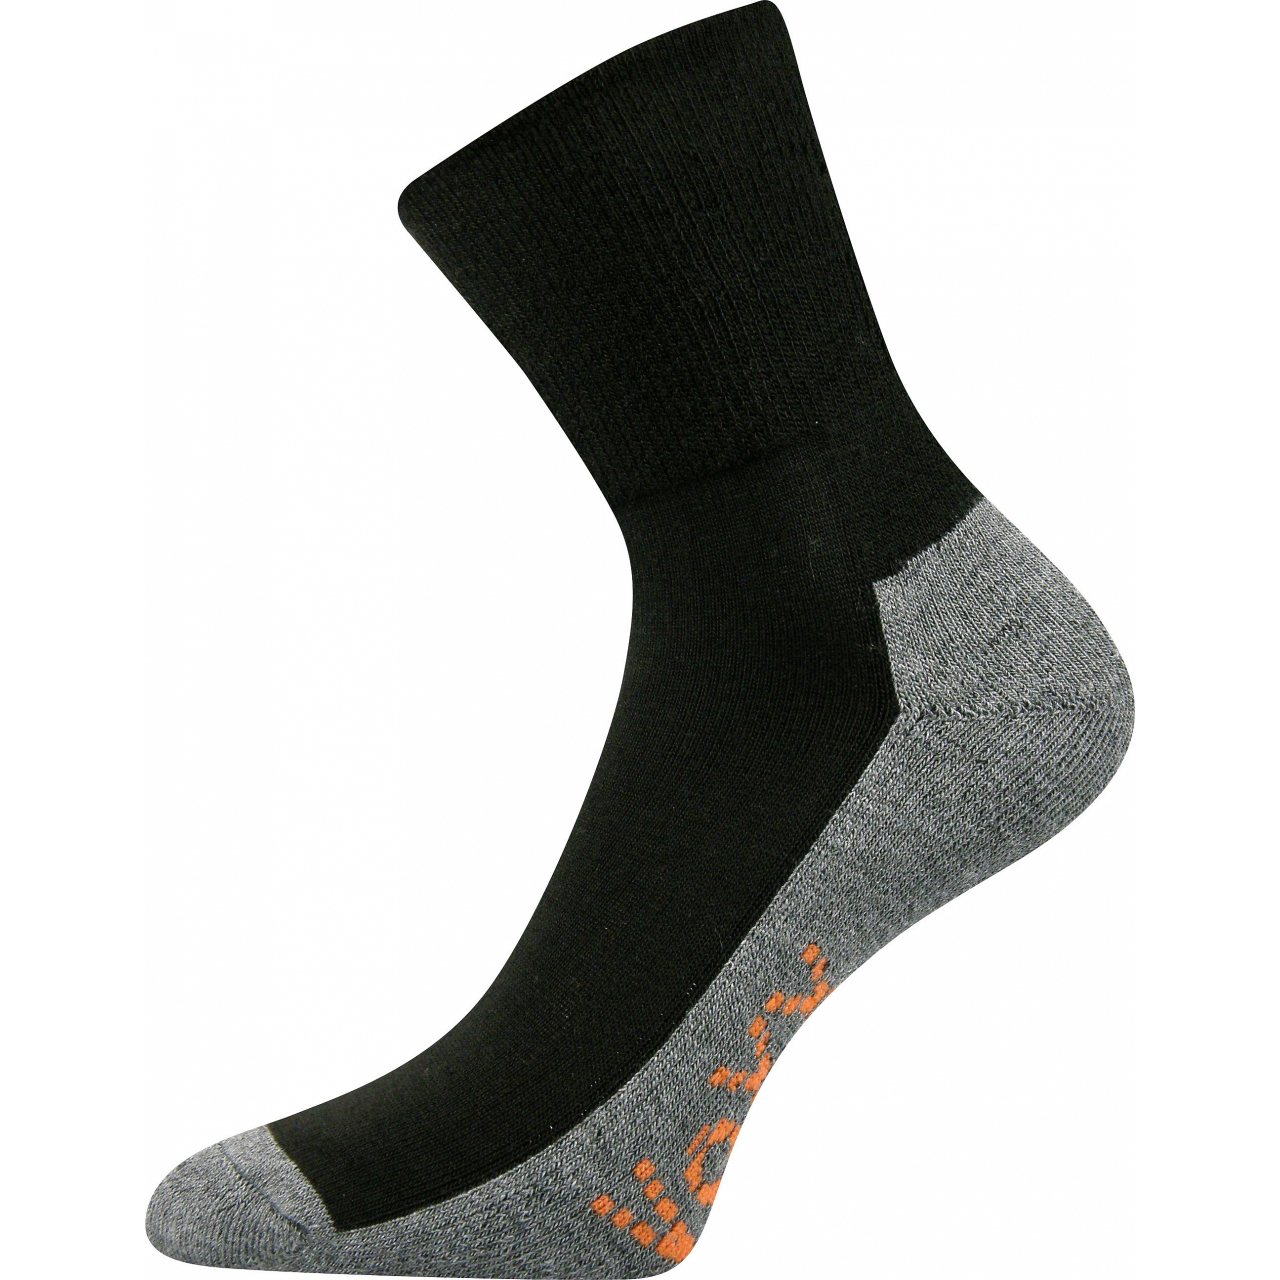 Ponožky sportovní Voxx Vigo CoolMax - černé-šedé, 39-42